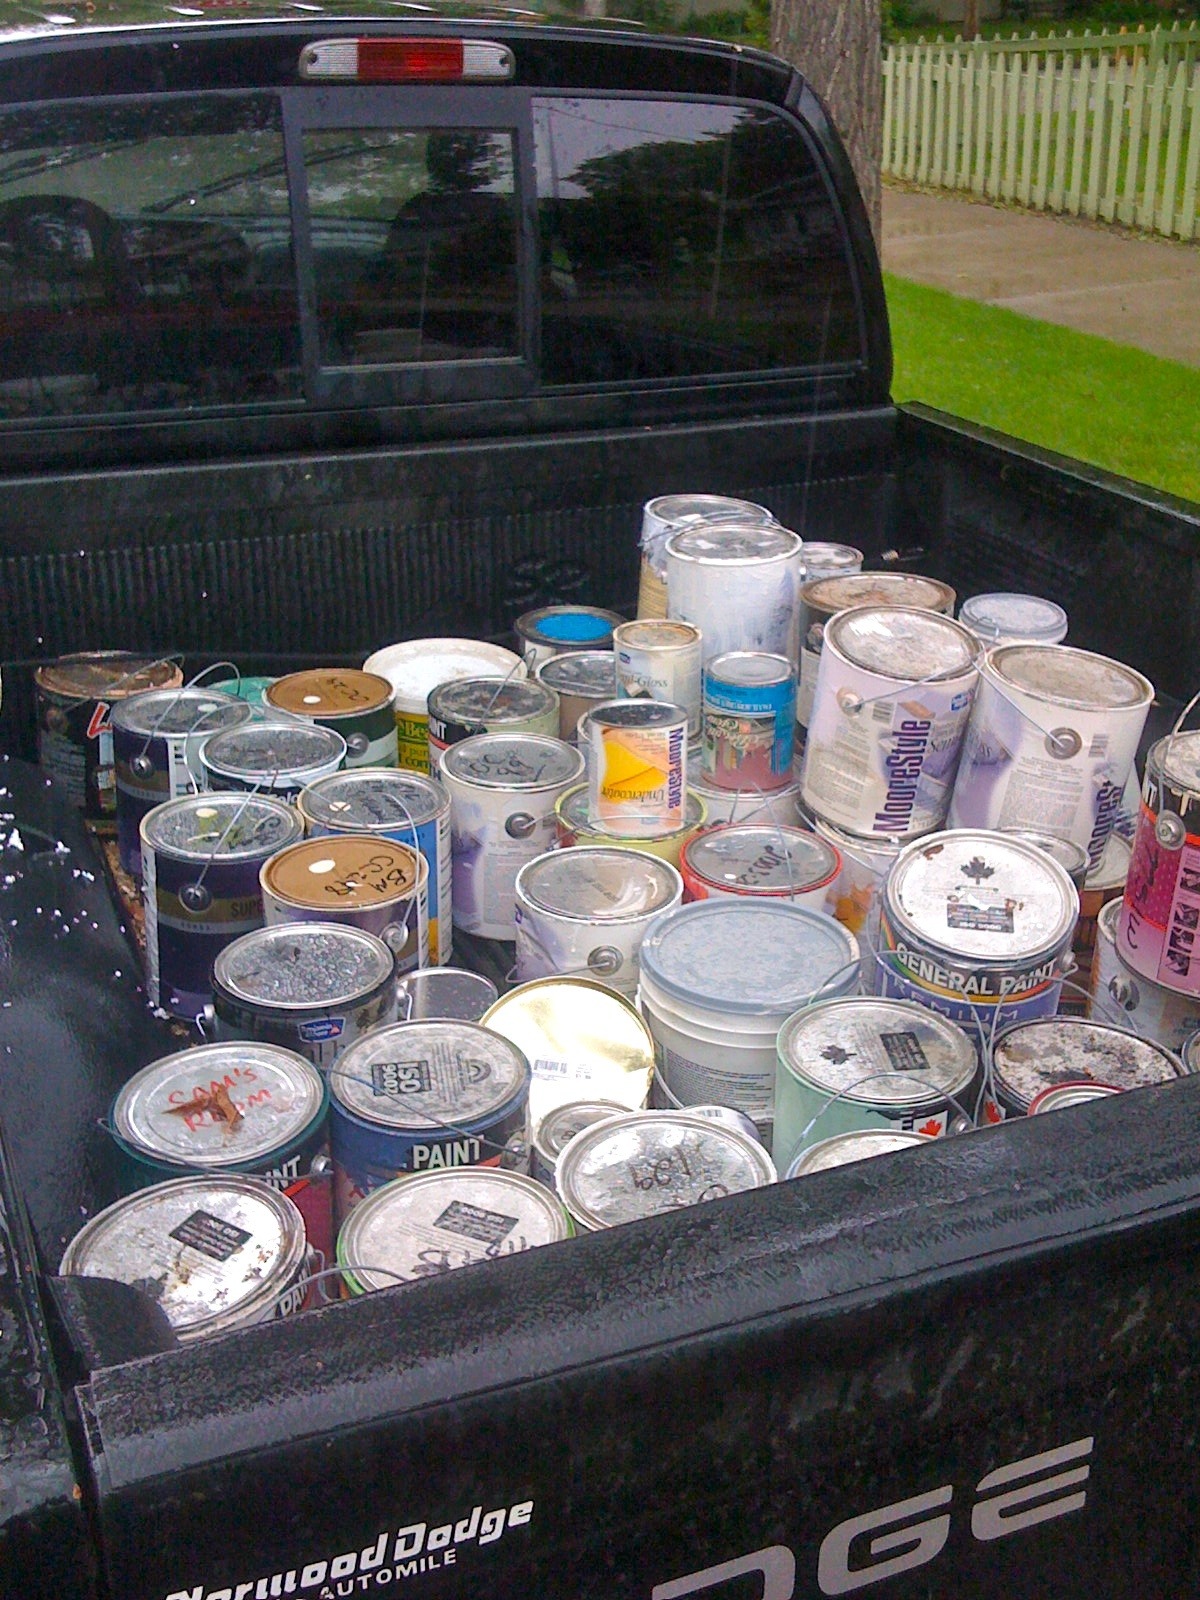 paint cans,car